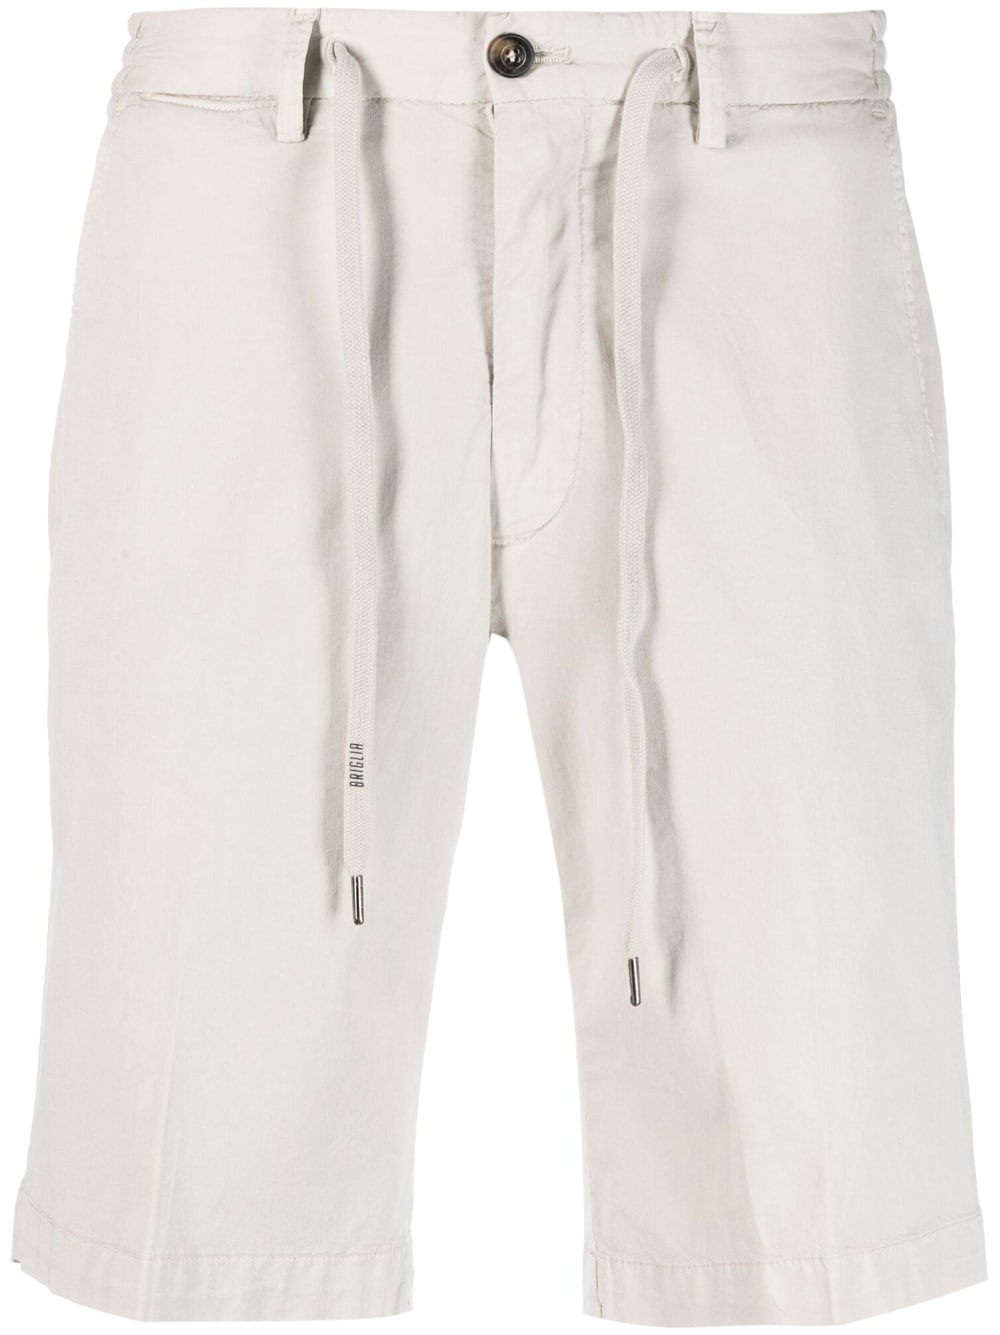  BRIGLIA 1949- Cotton Chino Shorts